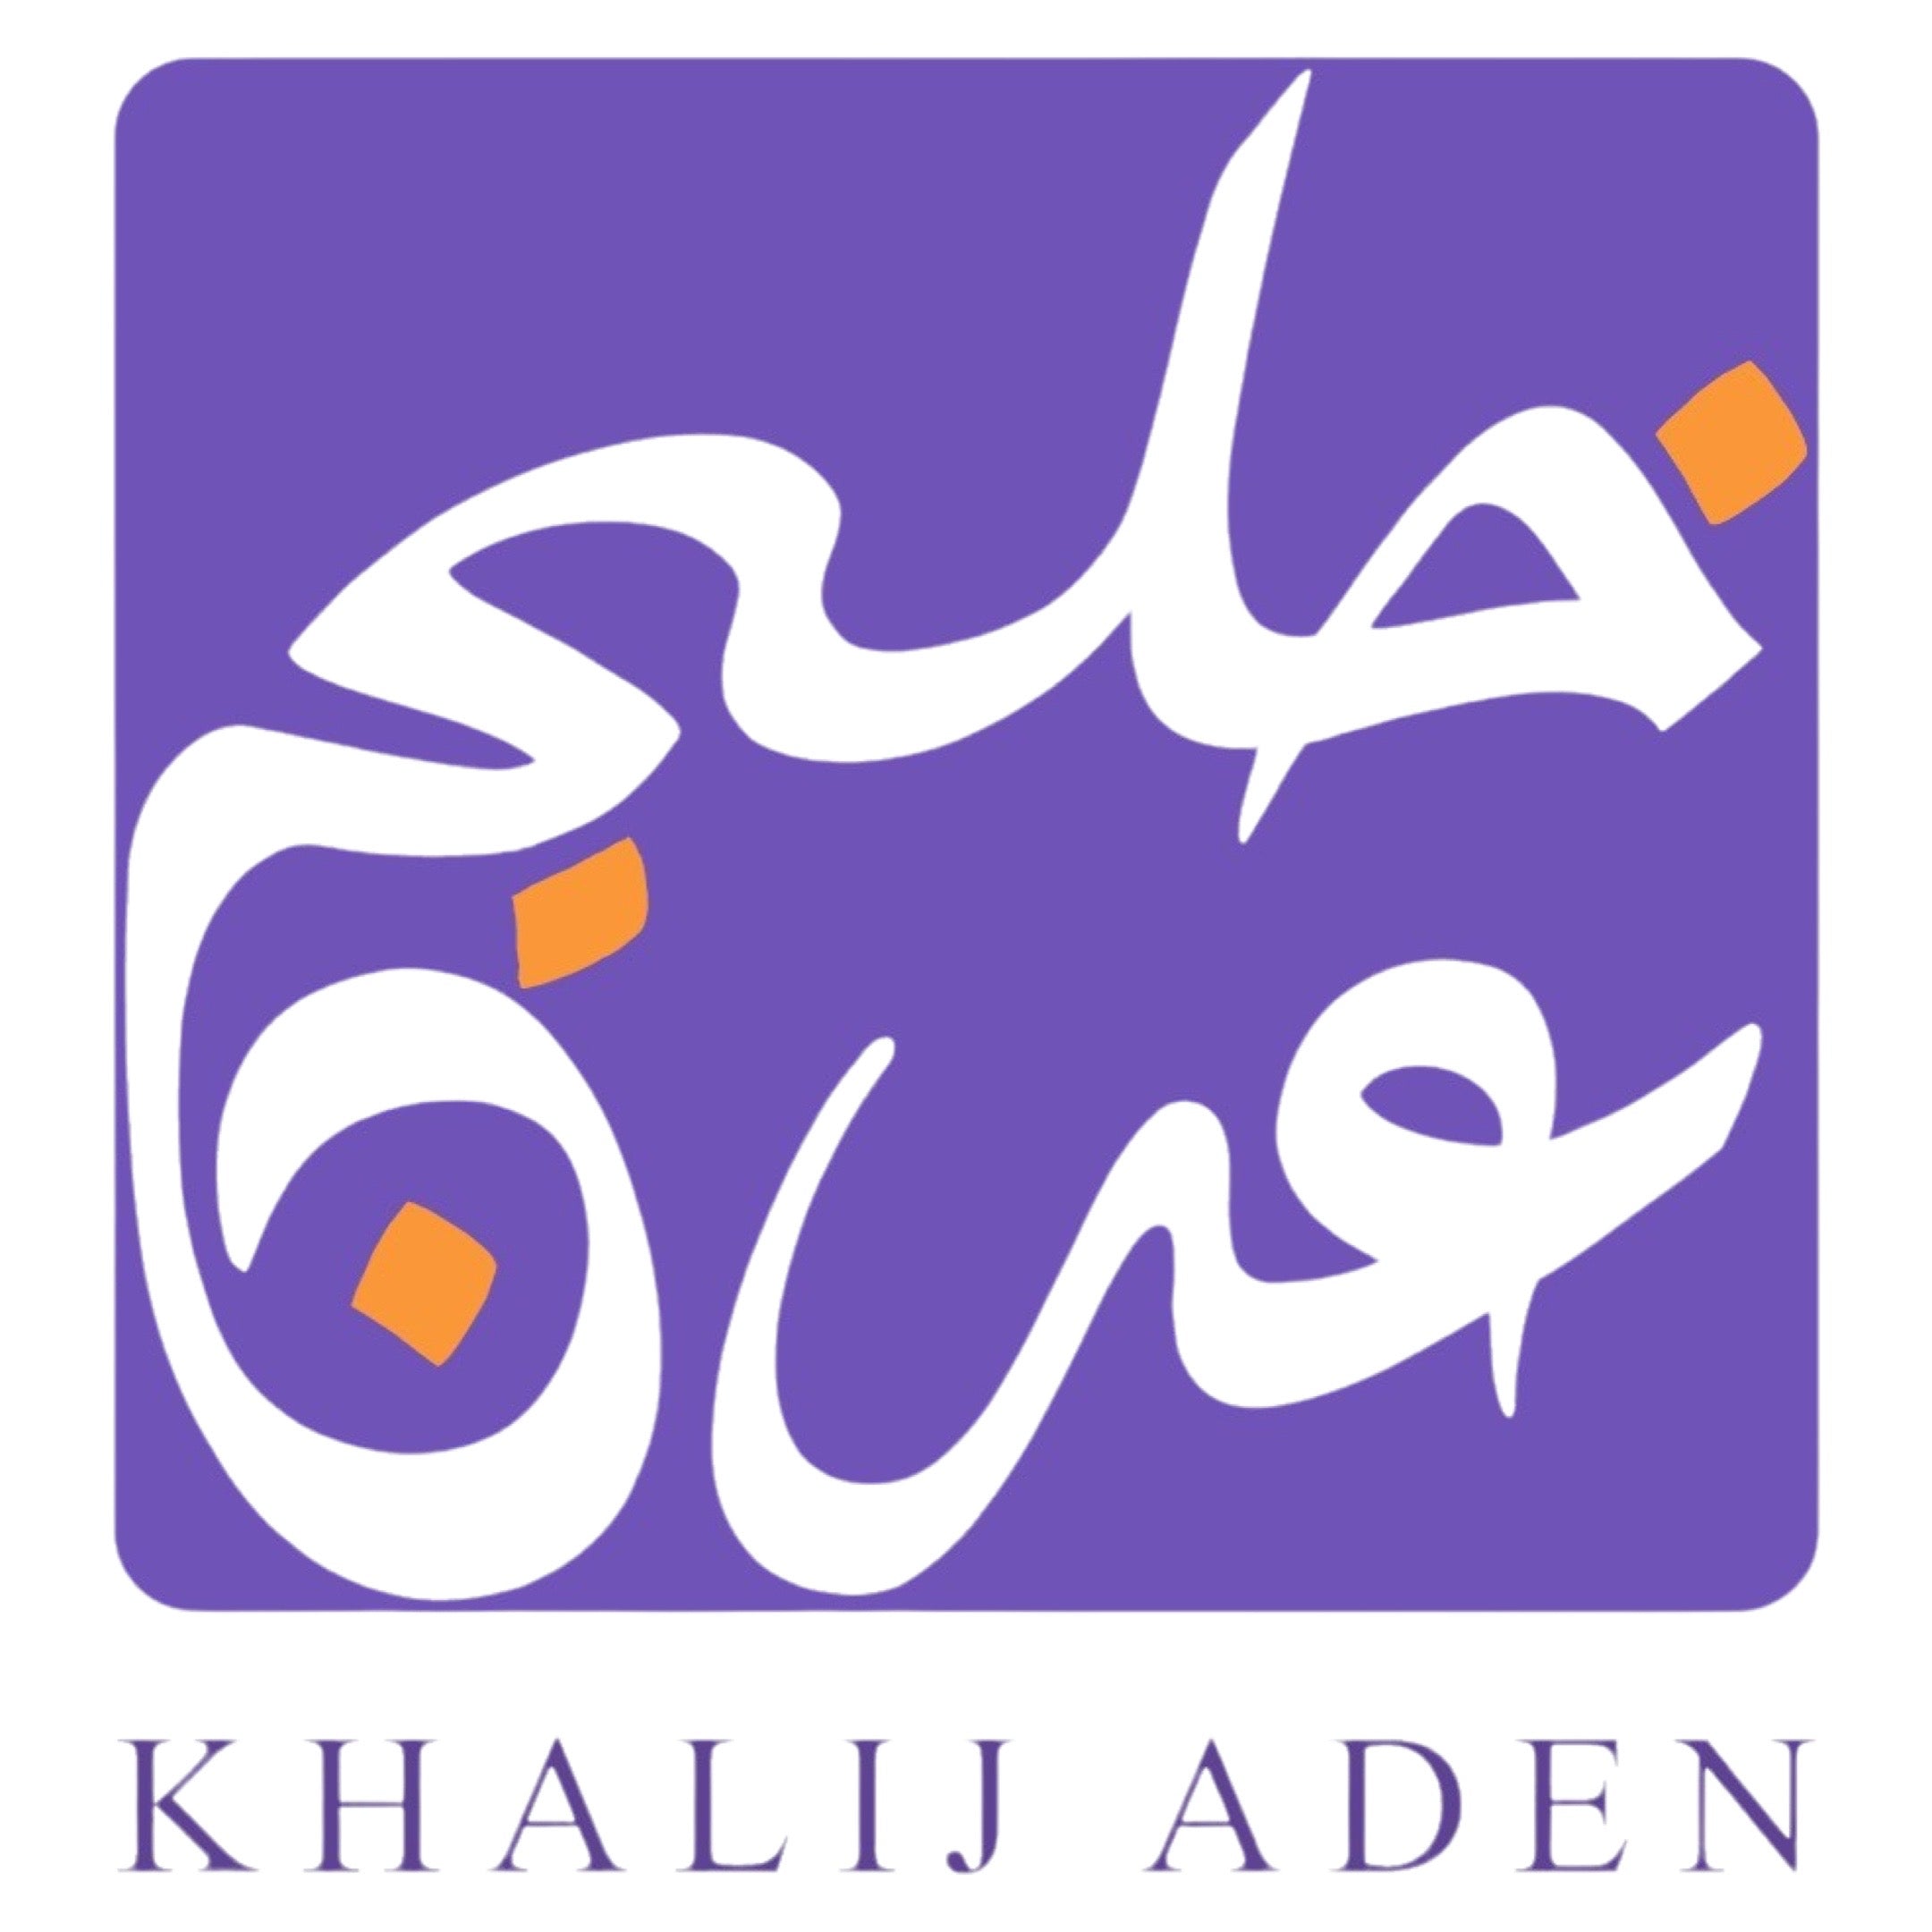 Khalij Aden